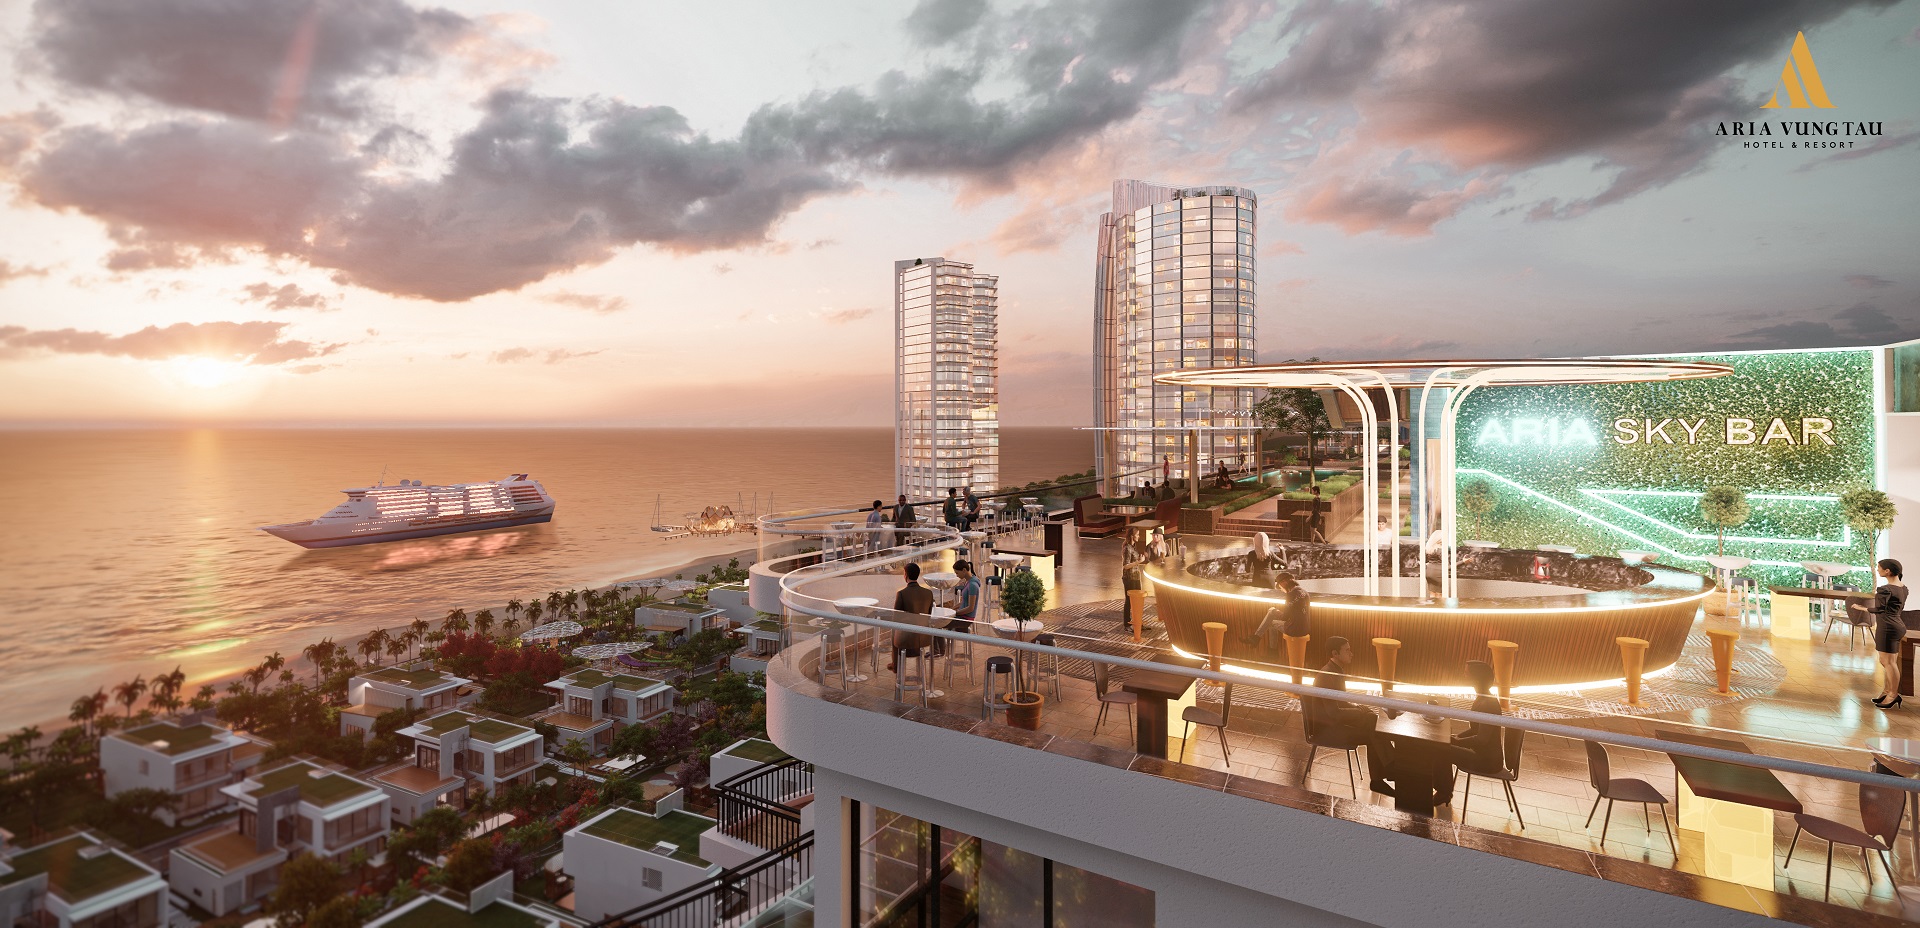 Dự án Aria Vũng Tàu hotel resort đổi mới năm 2021